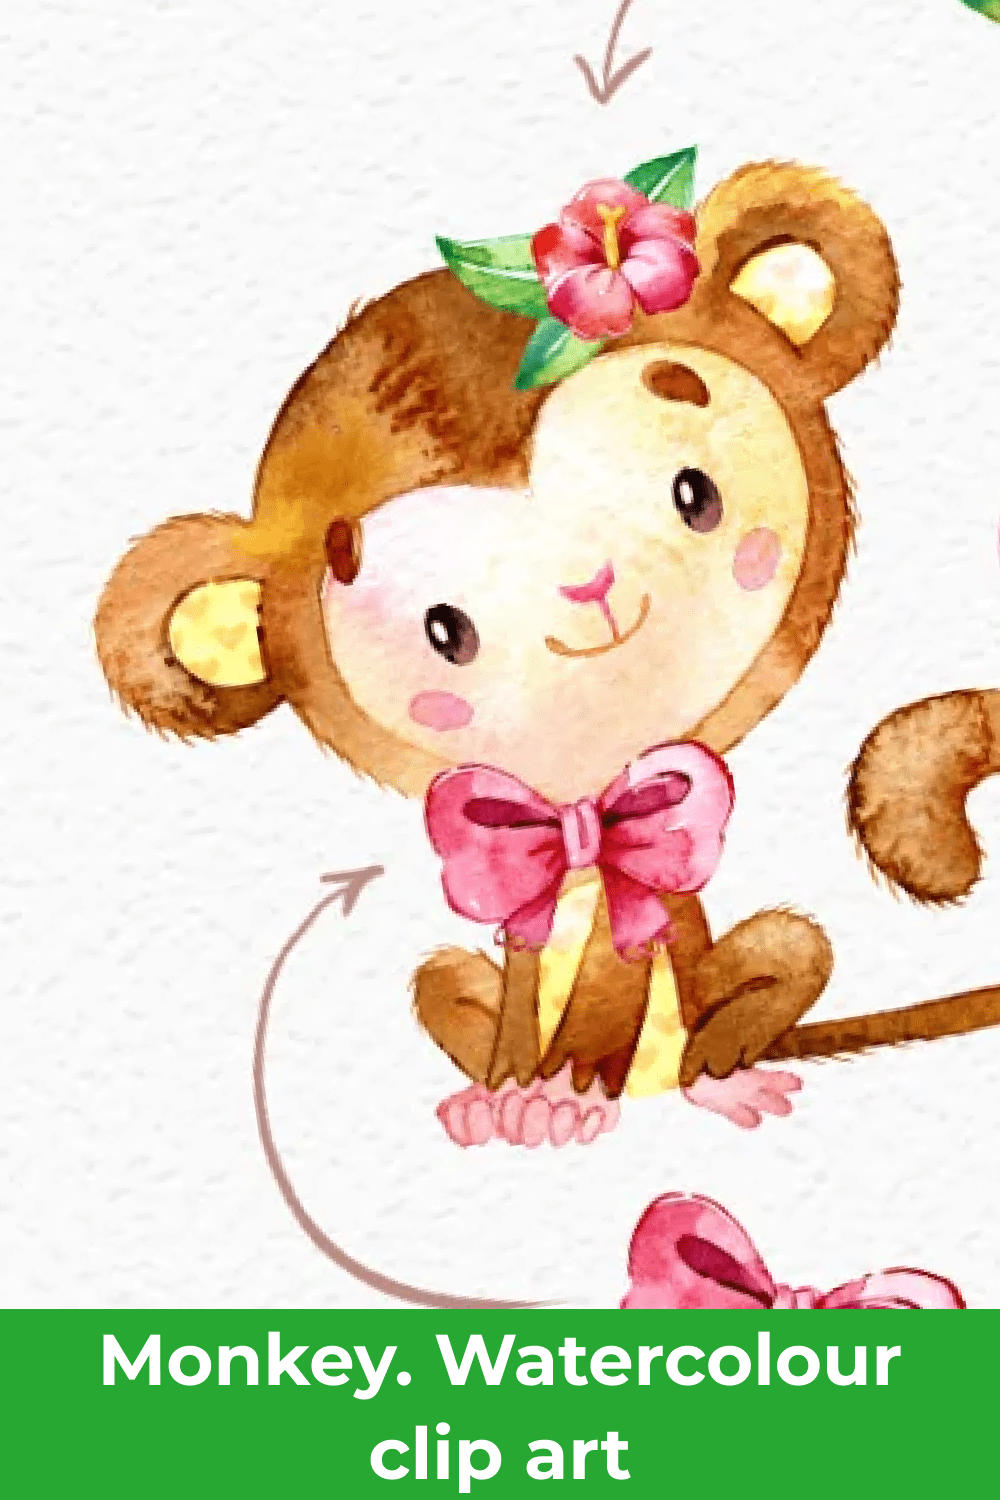 06 monkey. watercolour clip art 1000x1500 1